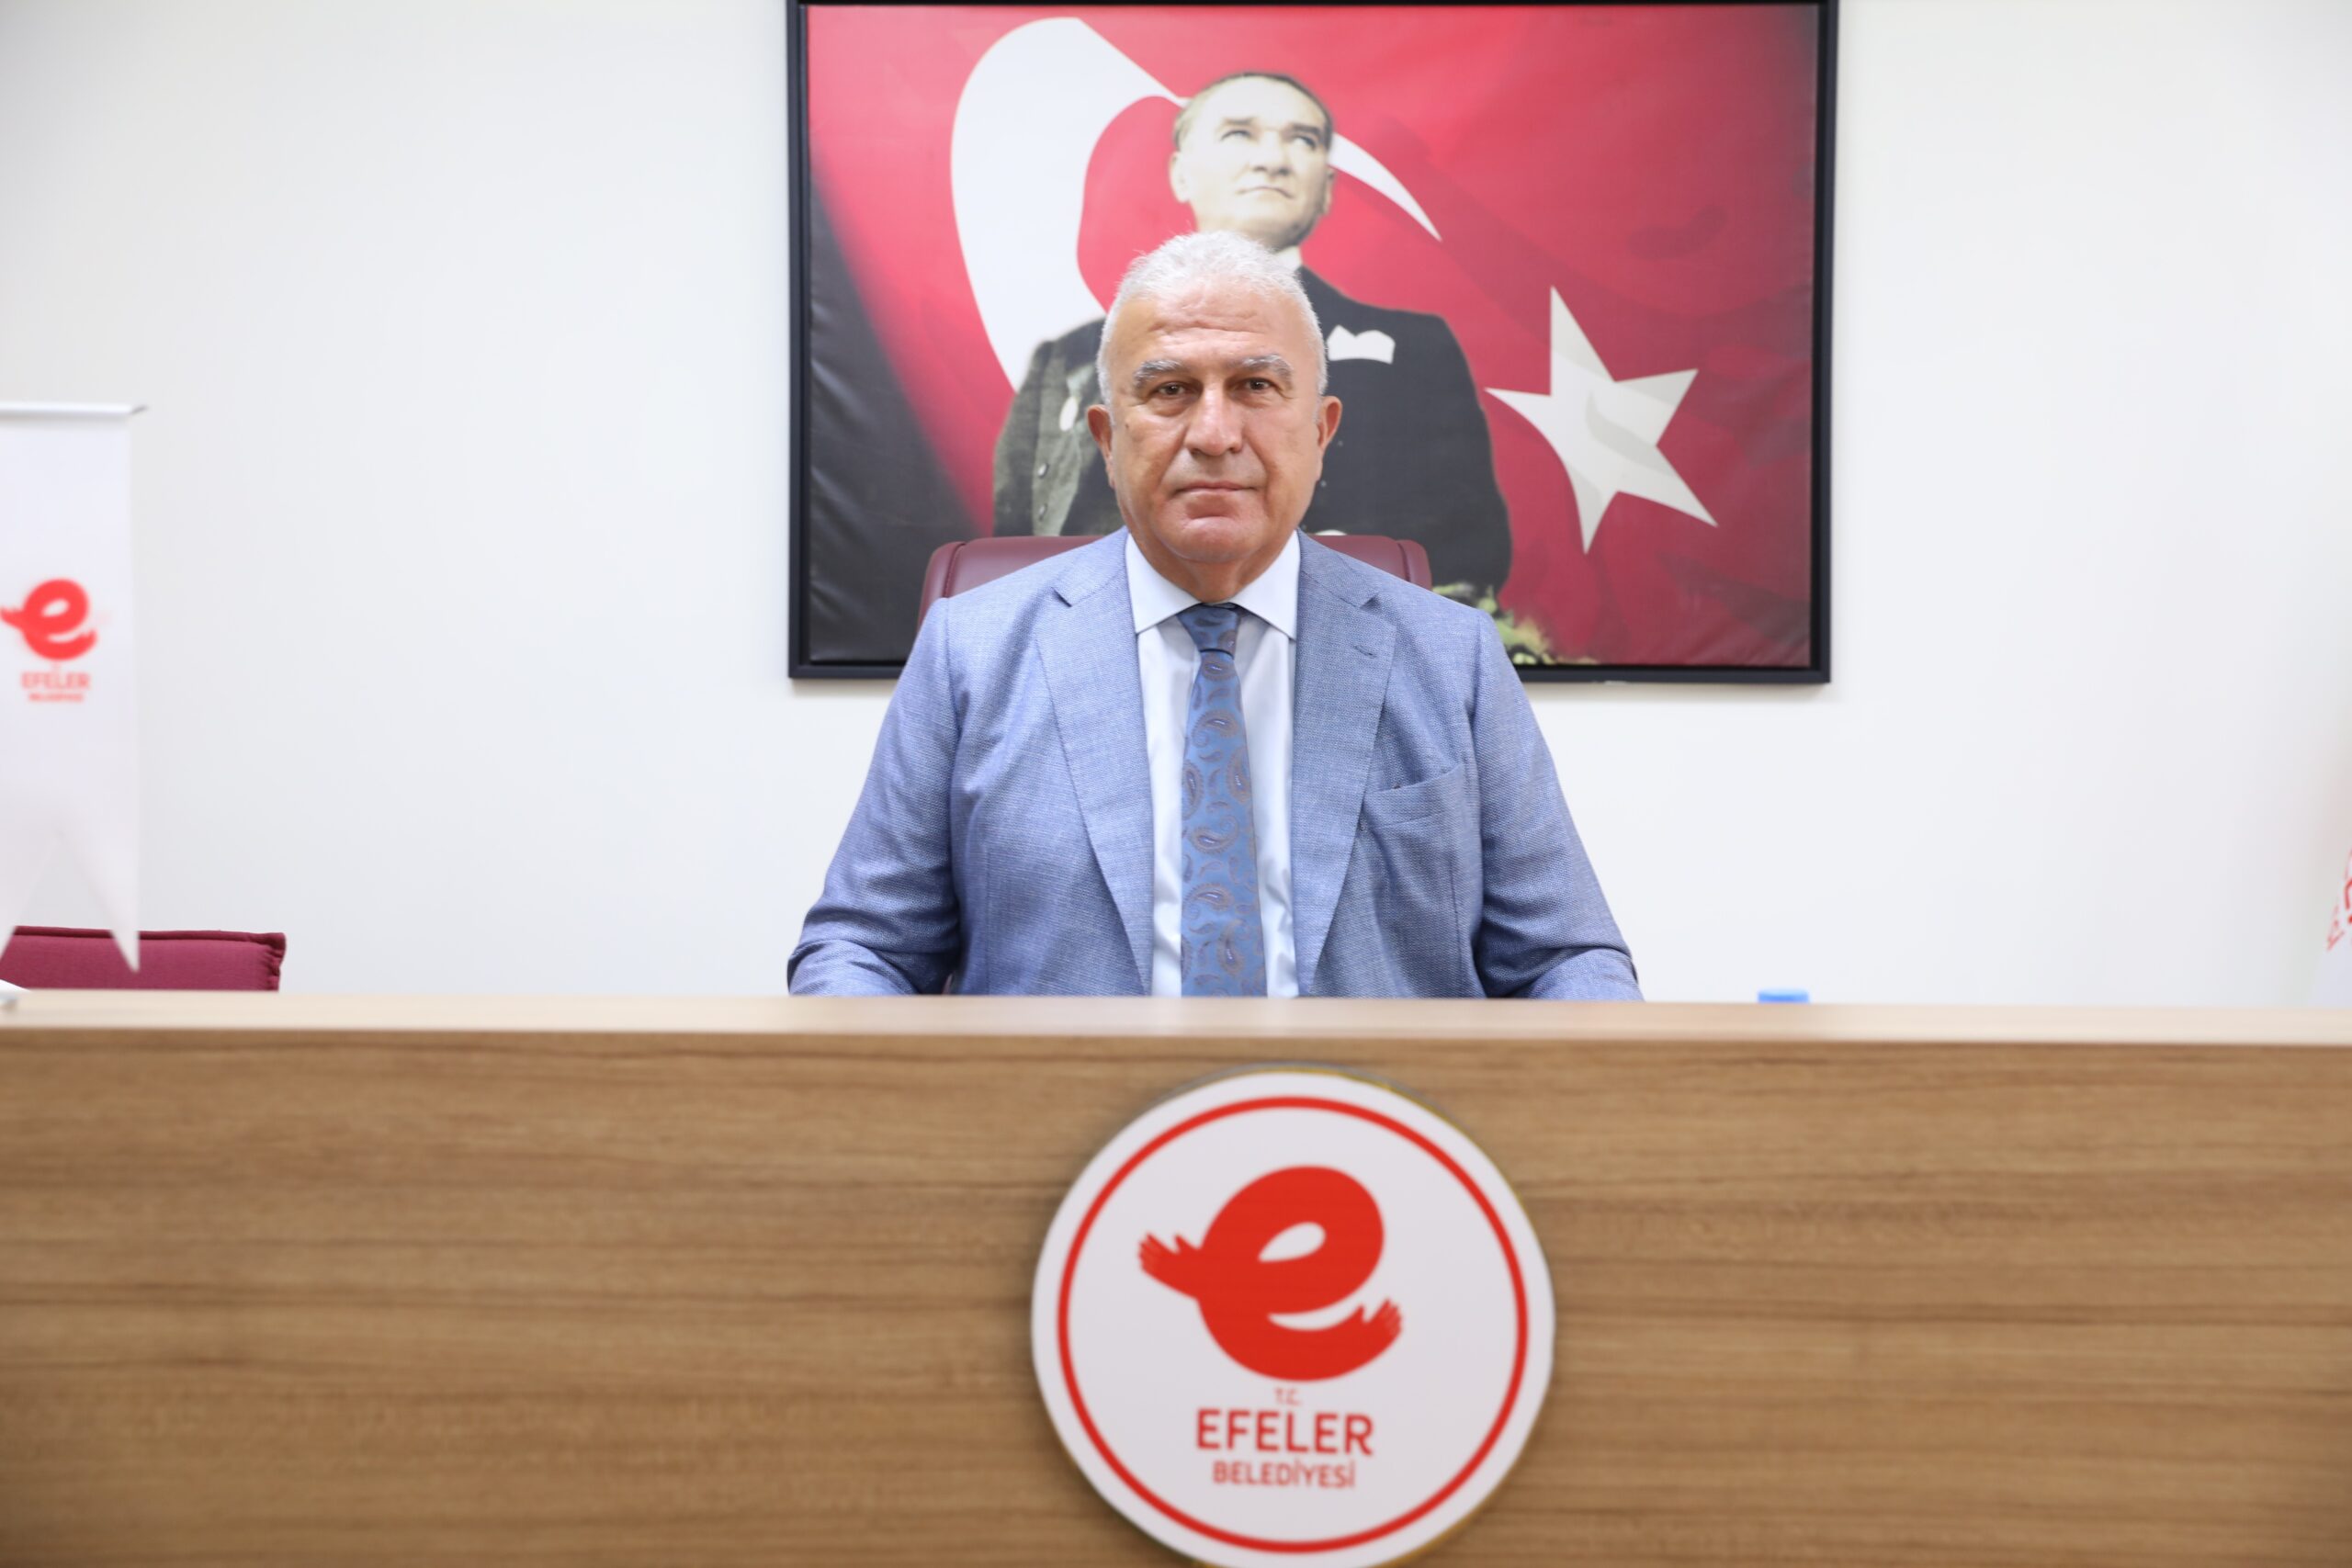 Efeler Belediye Başkanı Mehmet